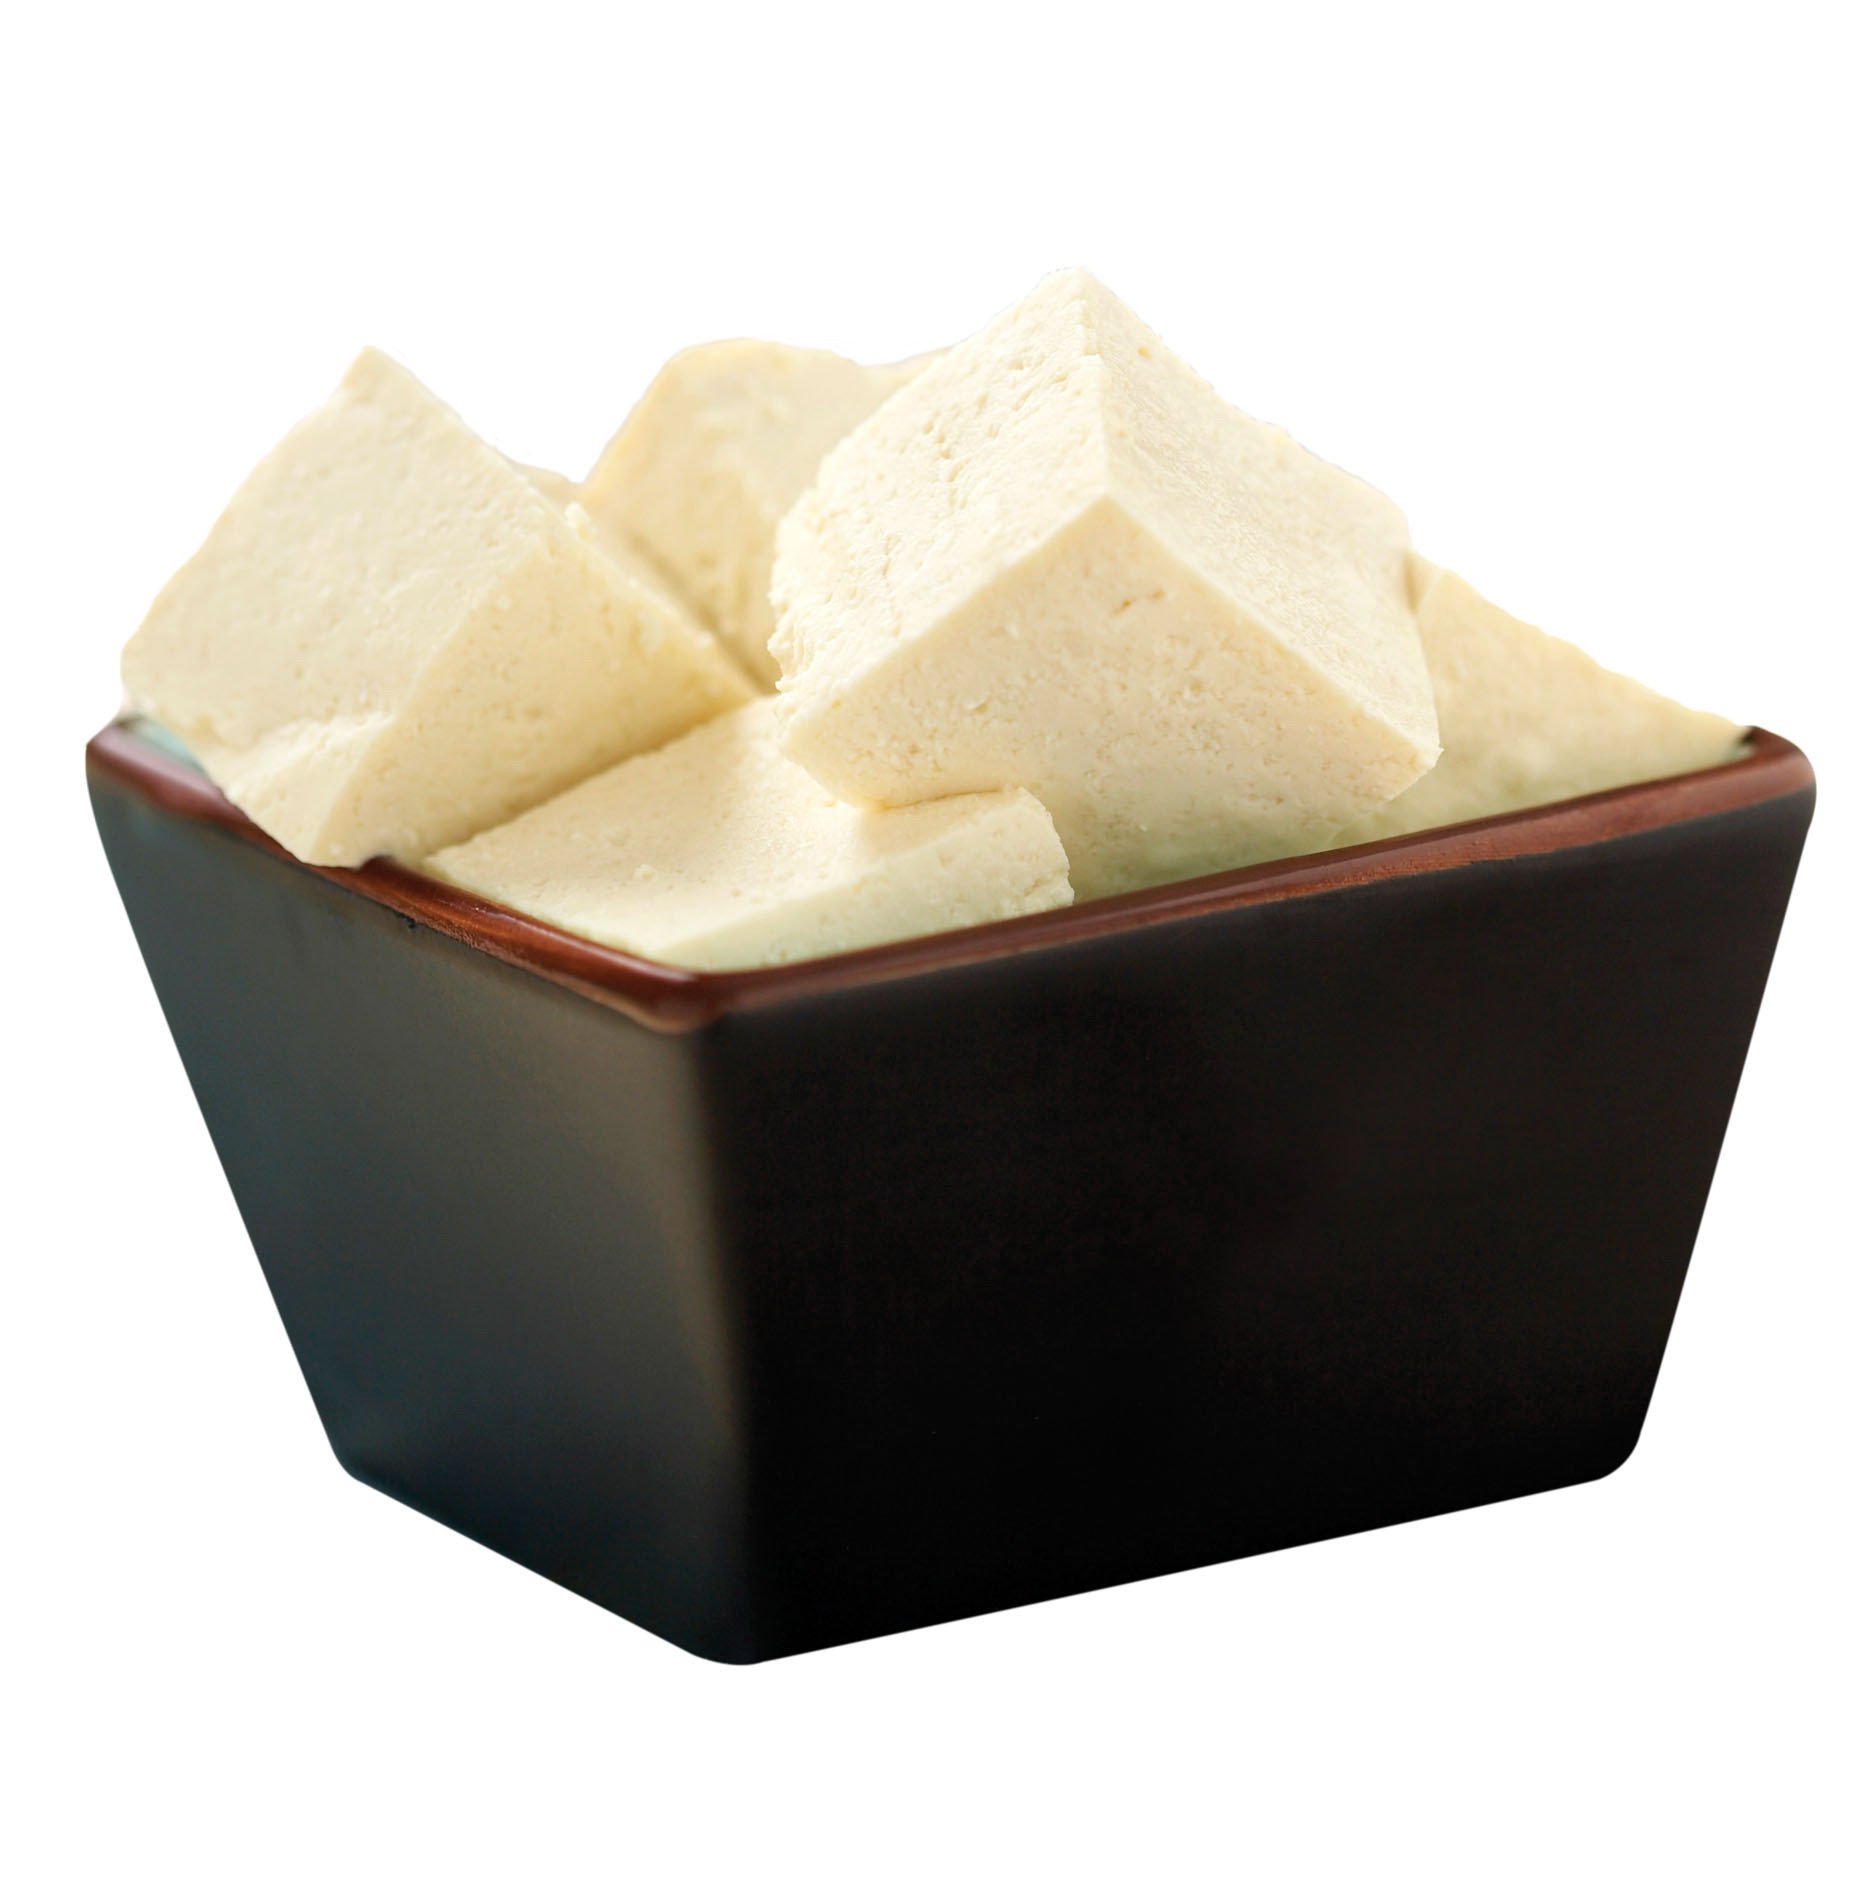 Bowl of Tofu Cubes